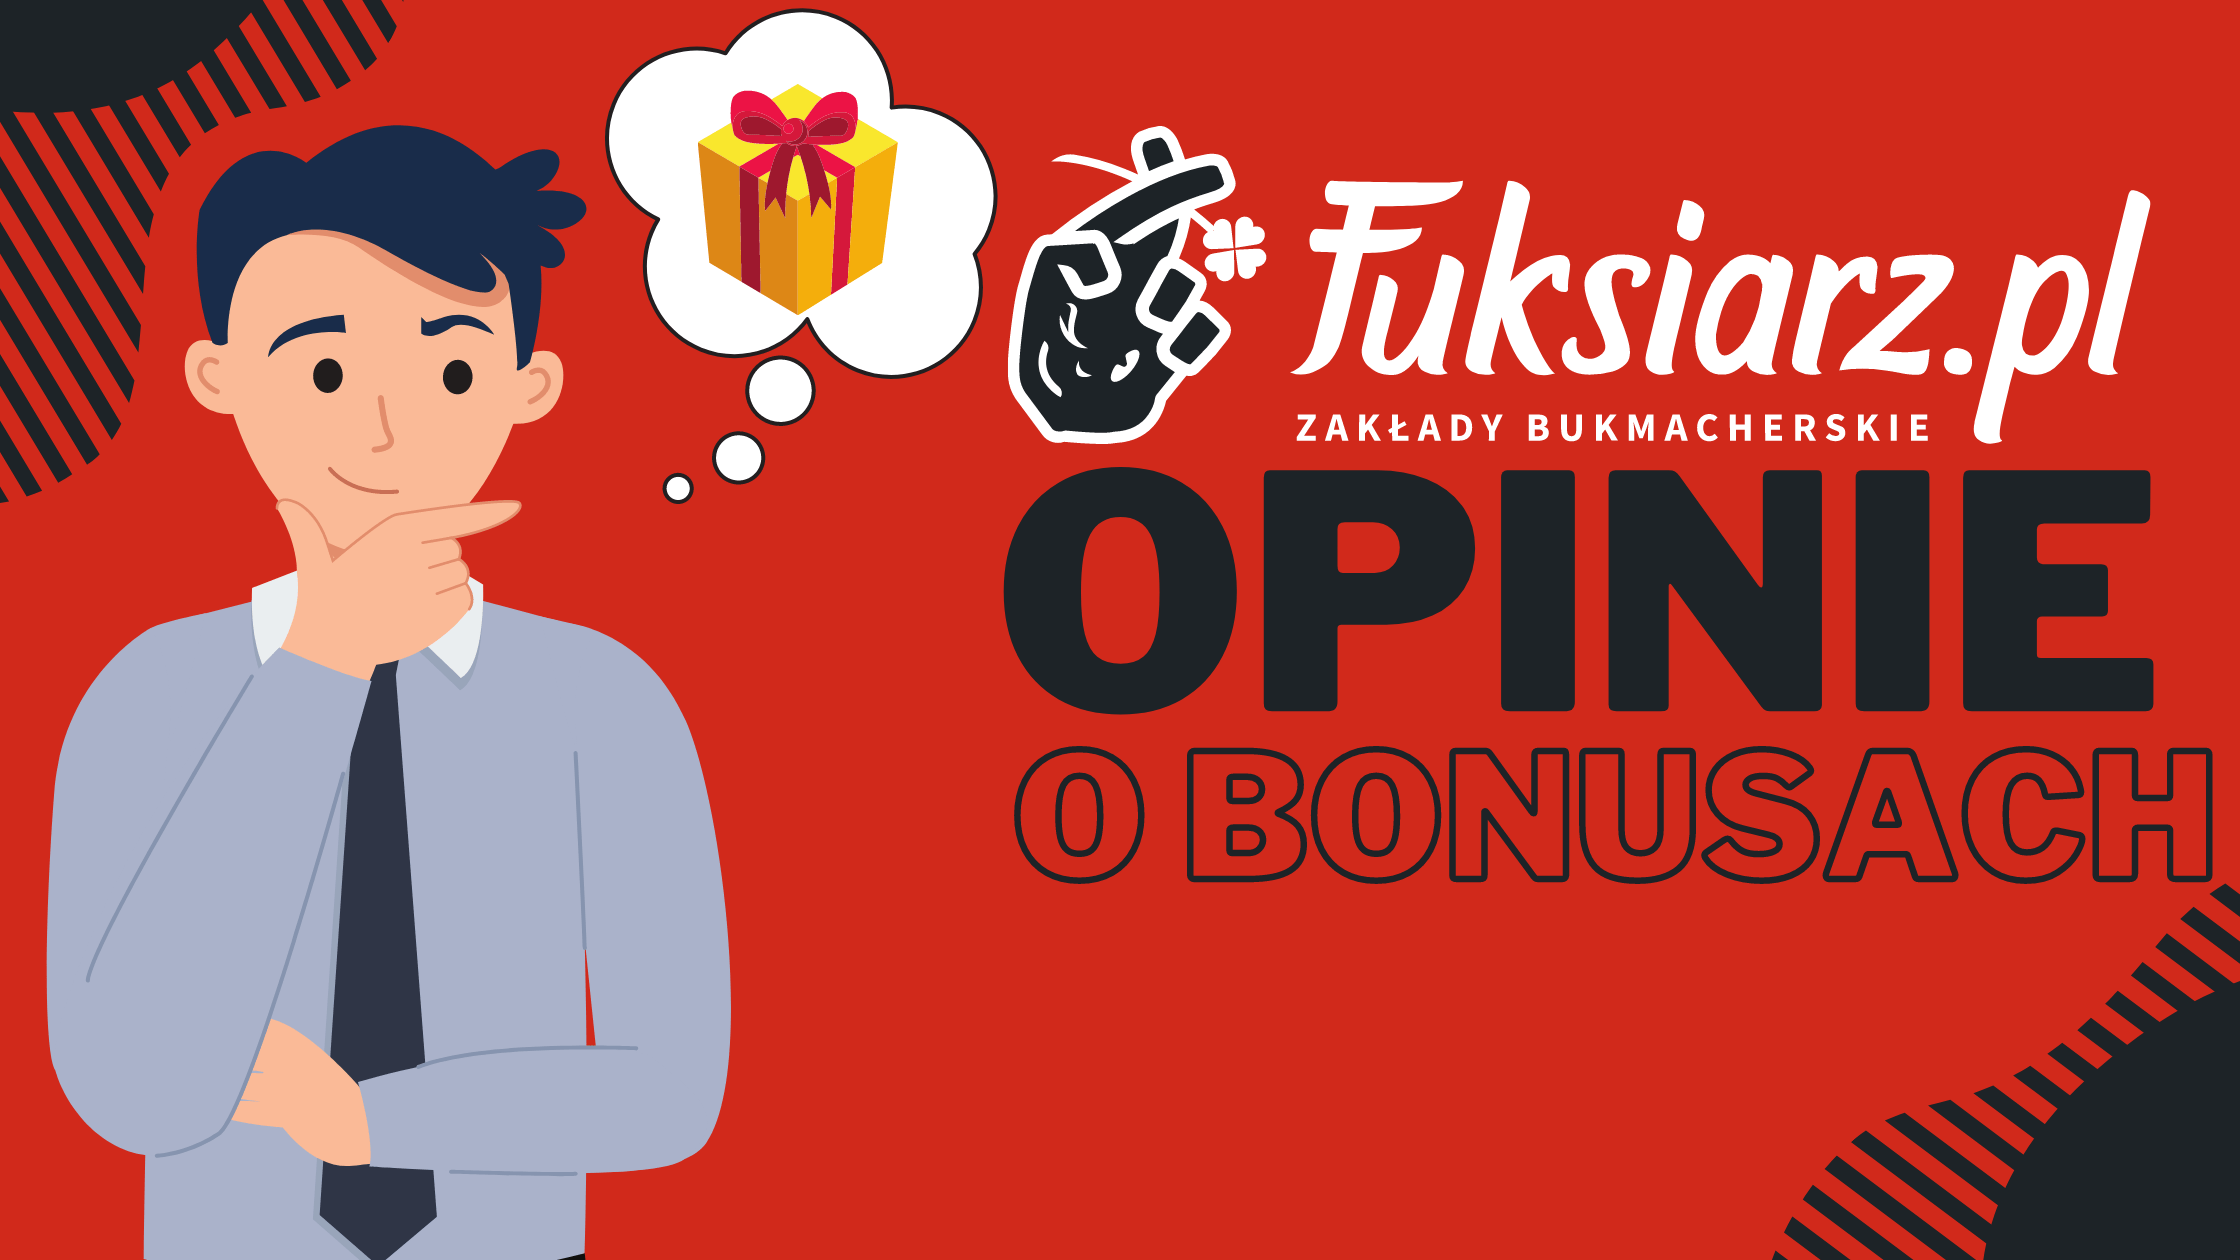 Legalny polski bukmacher Fuksiarz opinie o bonusach